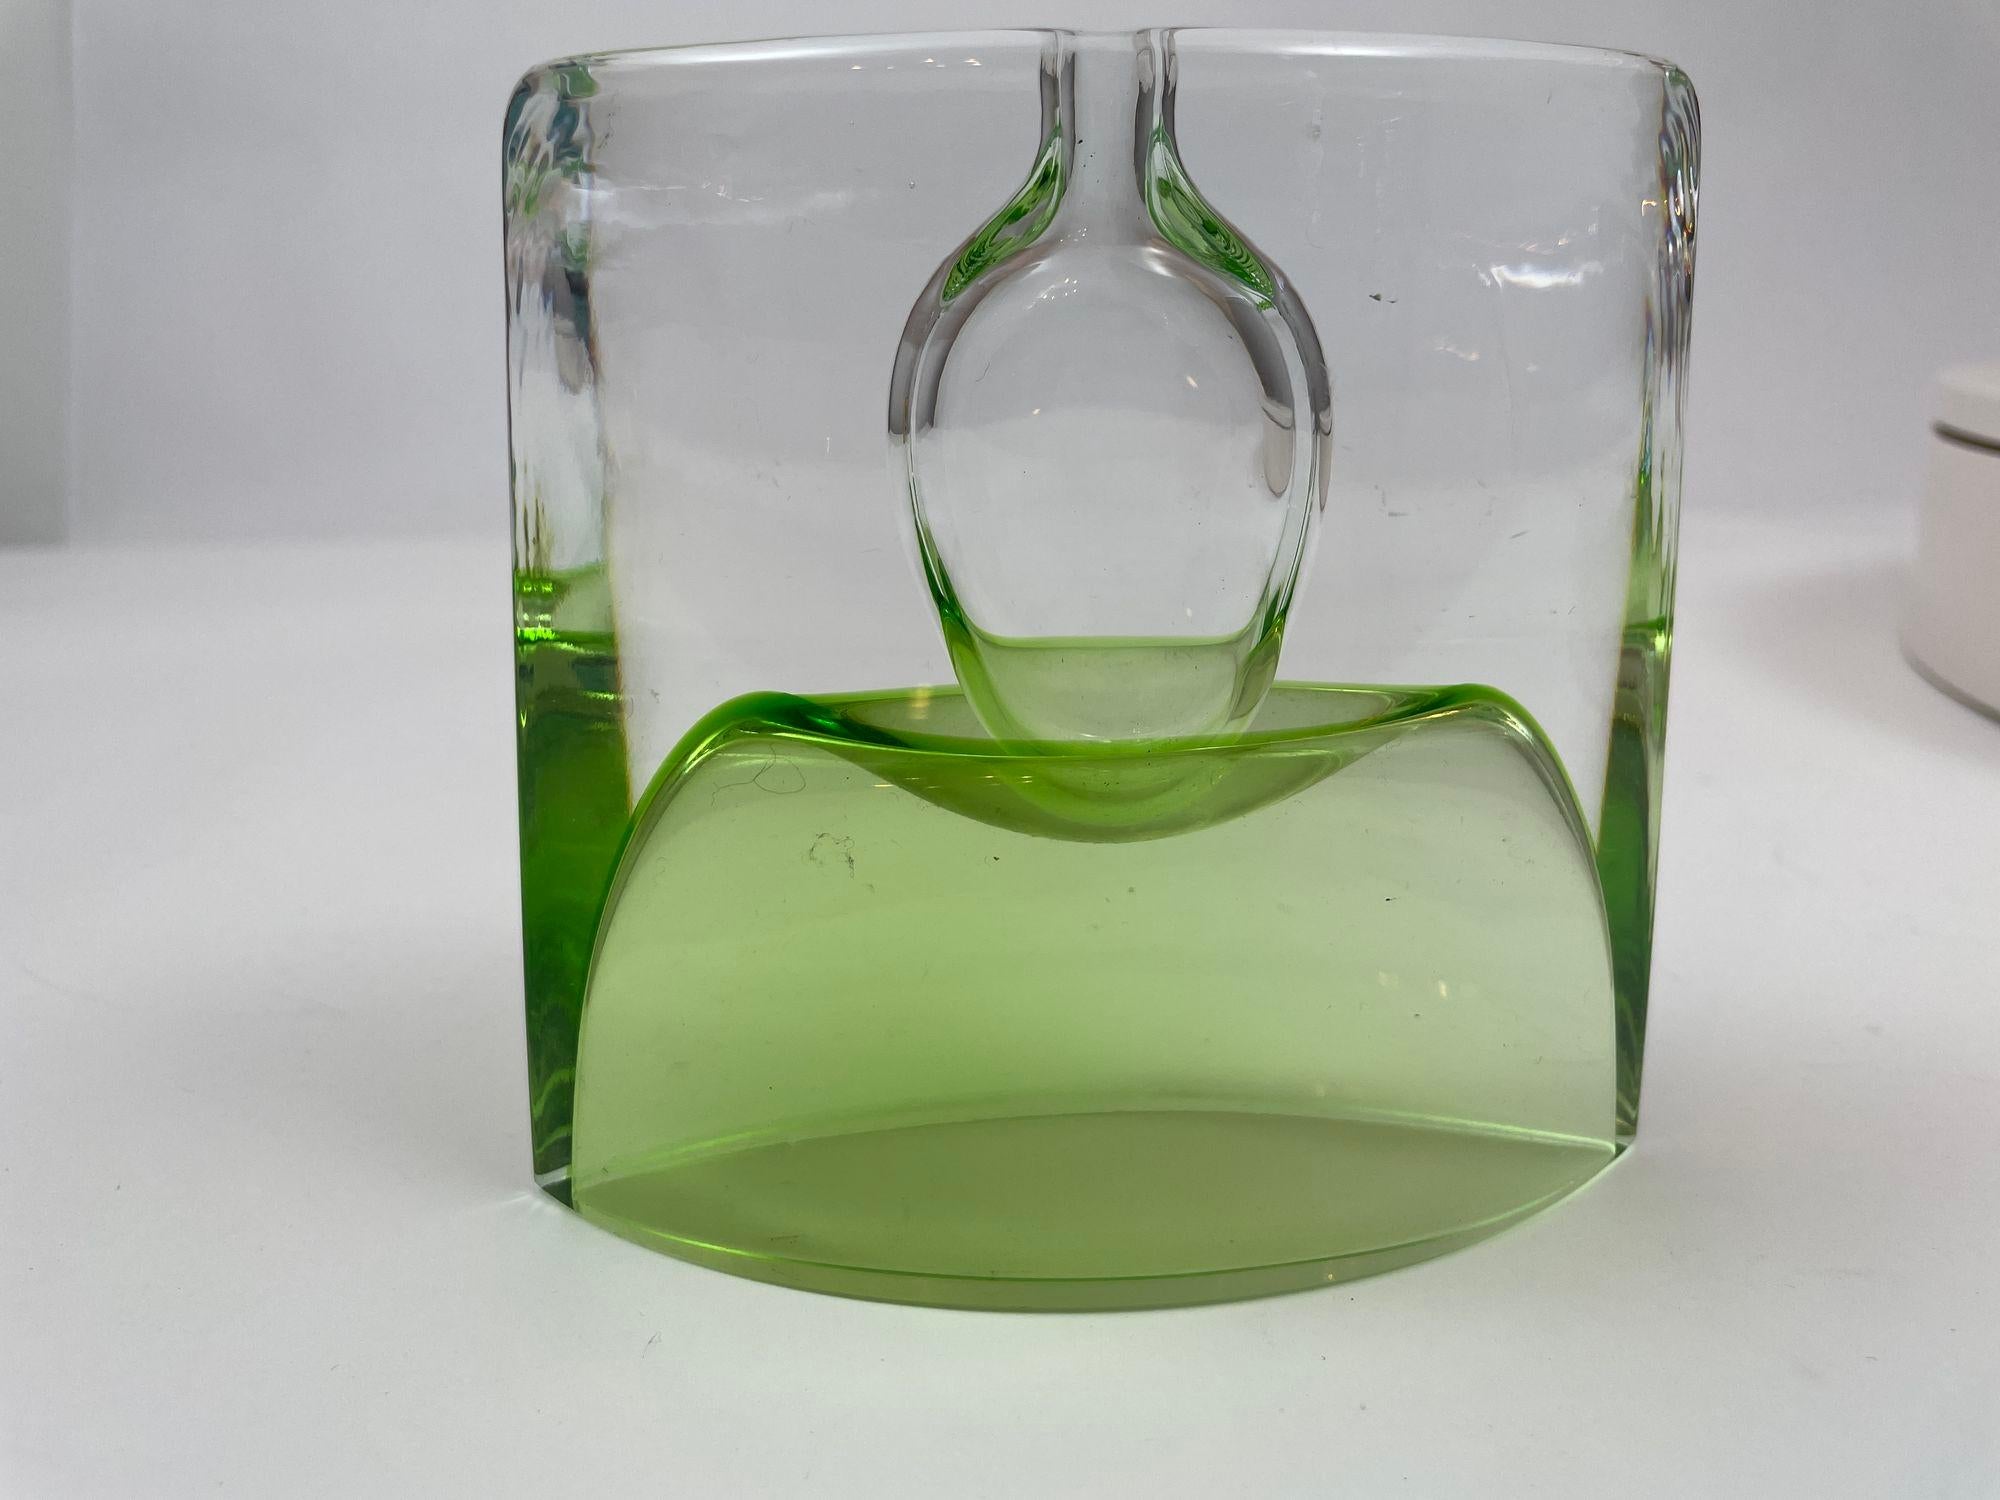 Krosno Poland Vintage Green Art Glass Bud Vase or Candle Holder For Sale 1